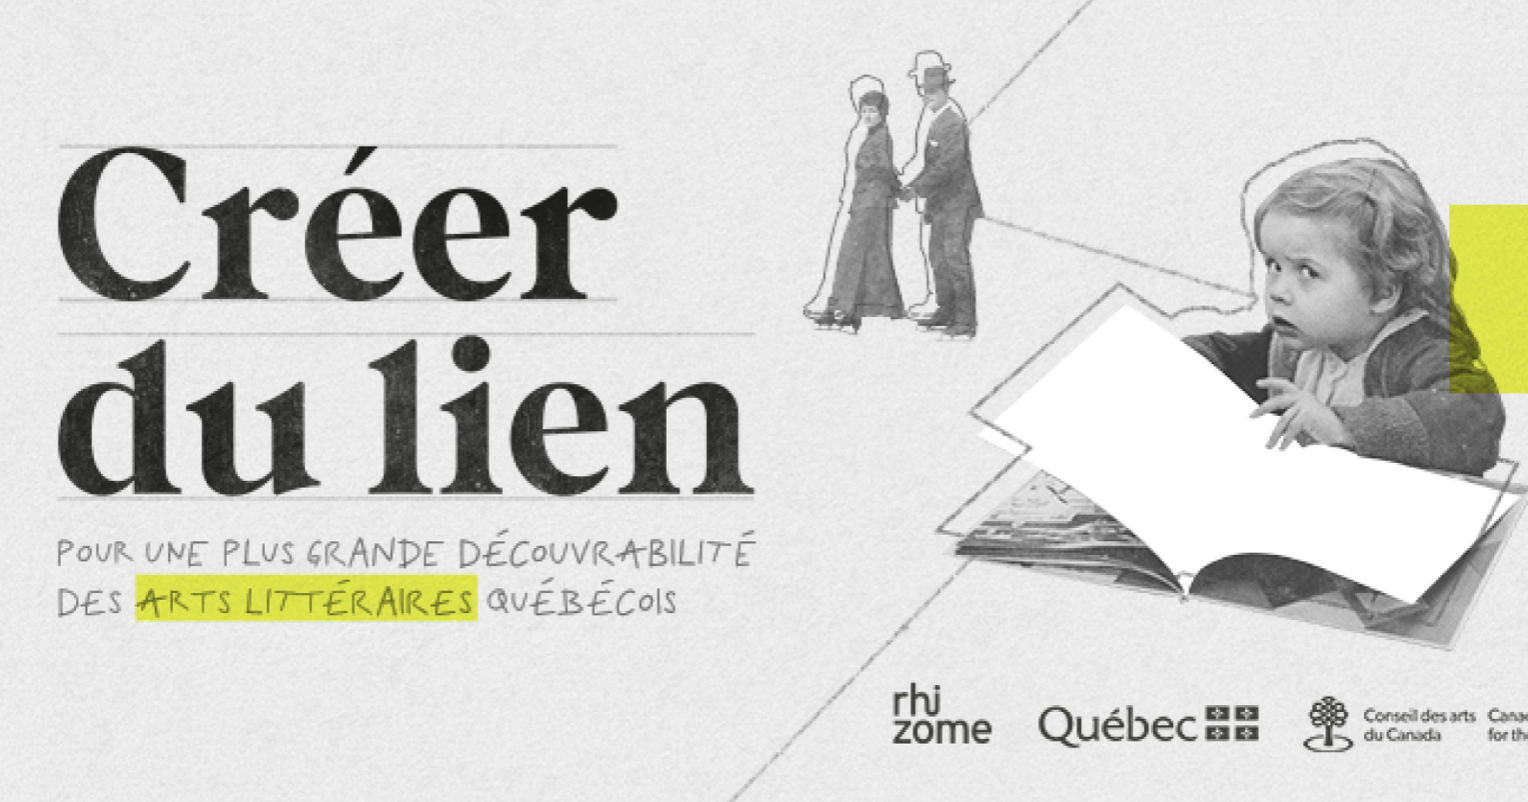 Créer du lien : pour une plus grande découvrabilité des arts littéraires québécois